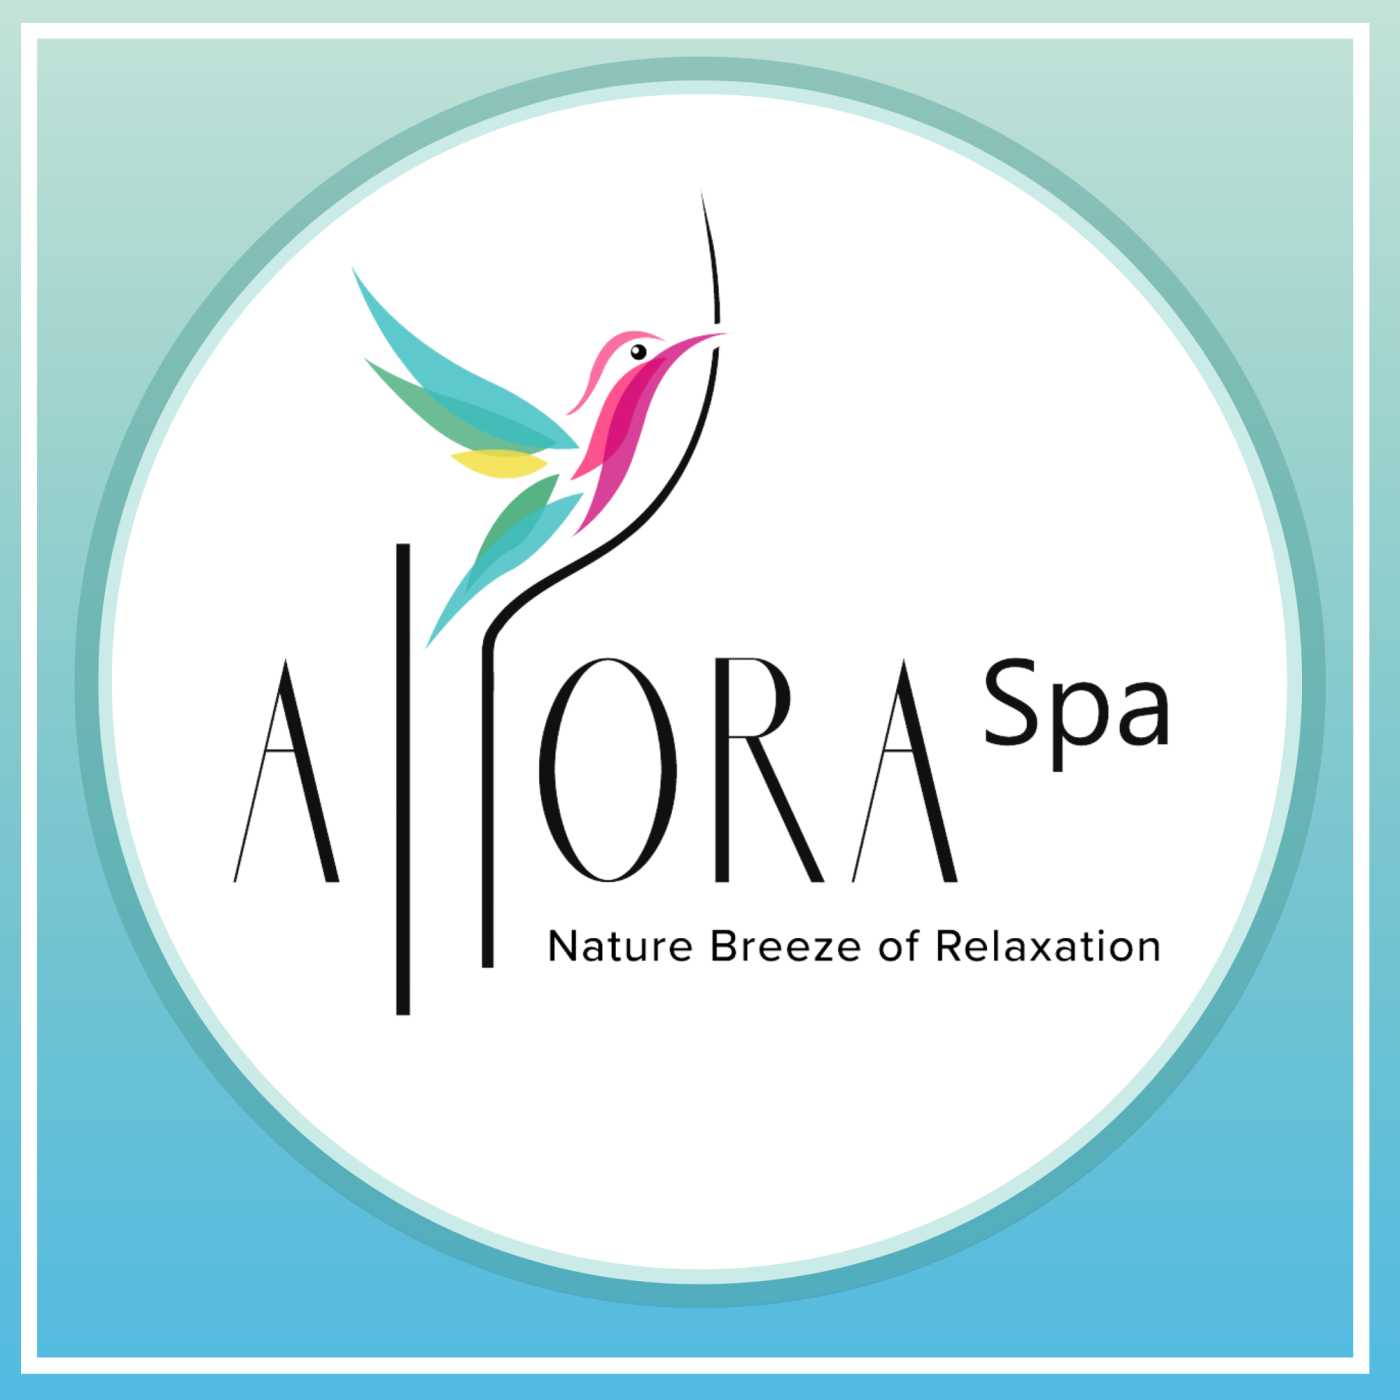 Dubai's Best Massage Centre Allora Spa And Massage Centre